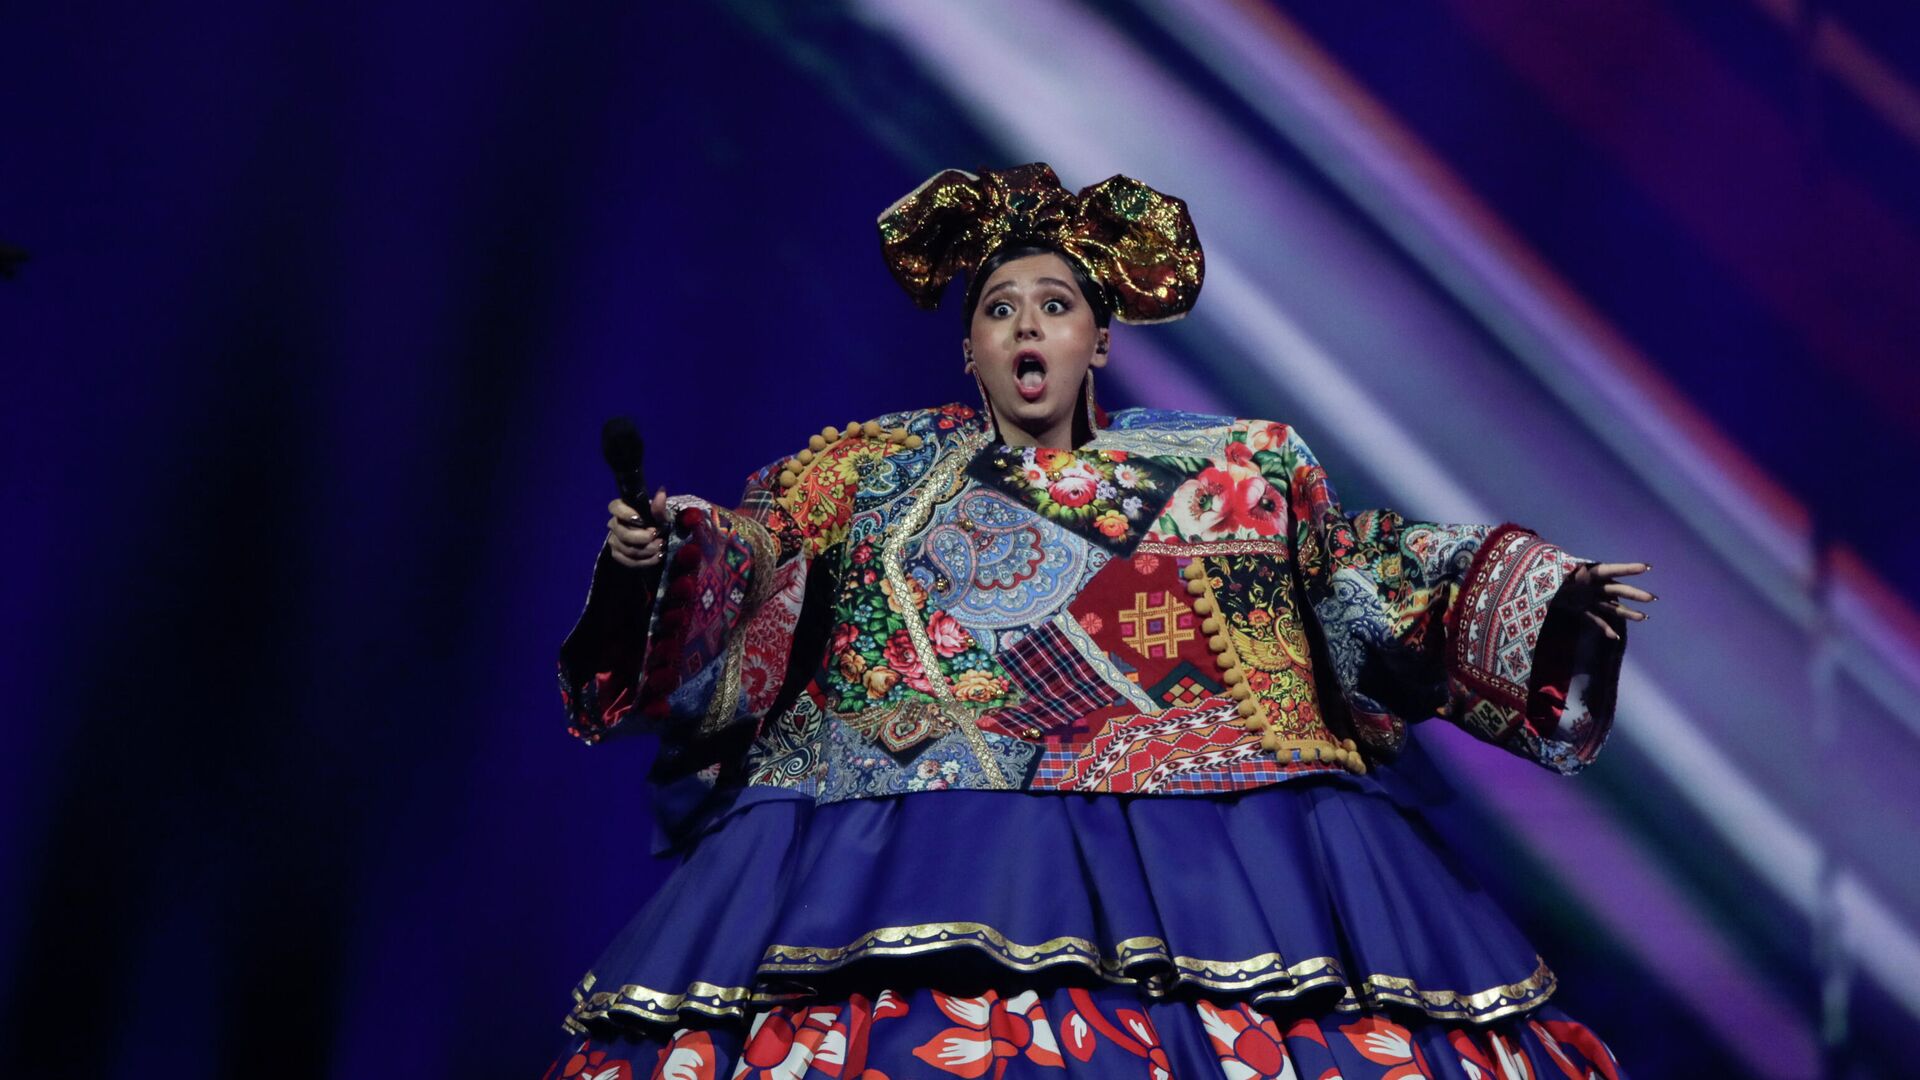 Россиянка Манижа выступает во время первого полуфинала 65-го конкурса Евровидение-2021 - Sputnik Таджикистан, 1920, 19.05.2021